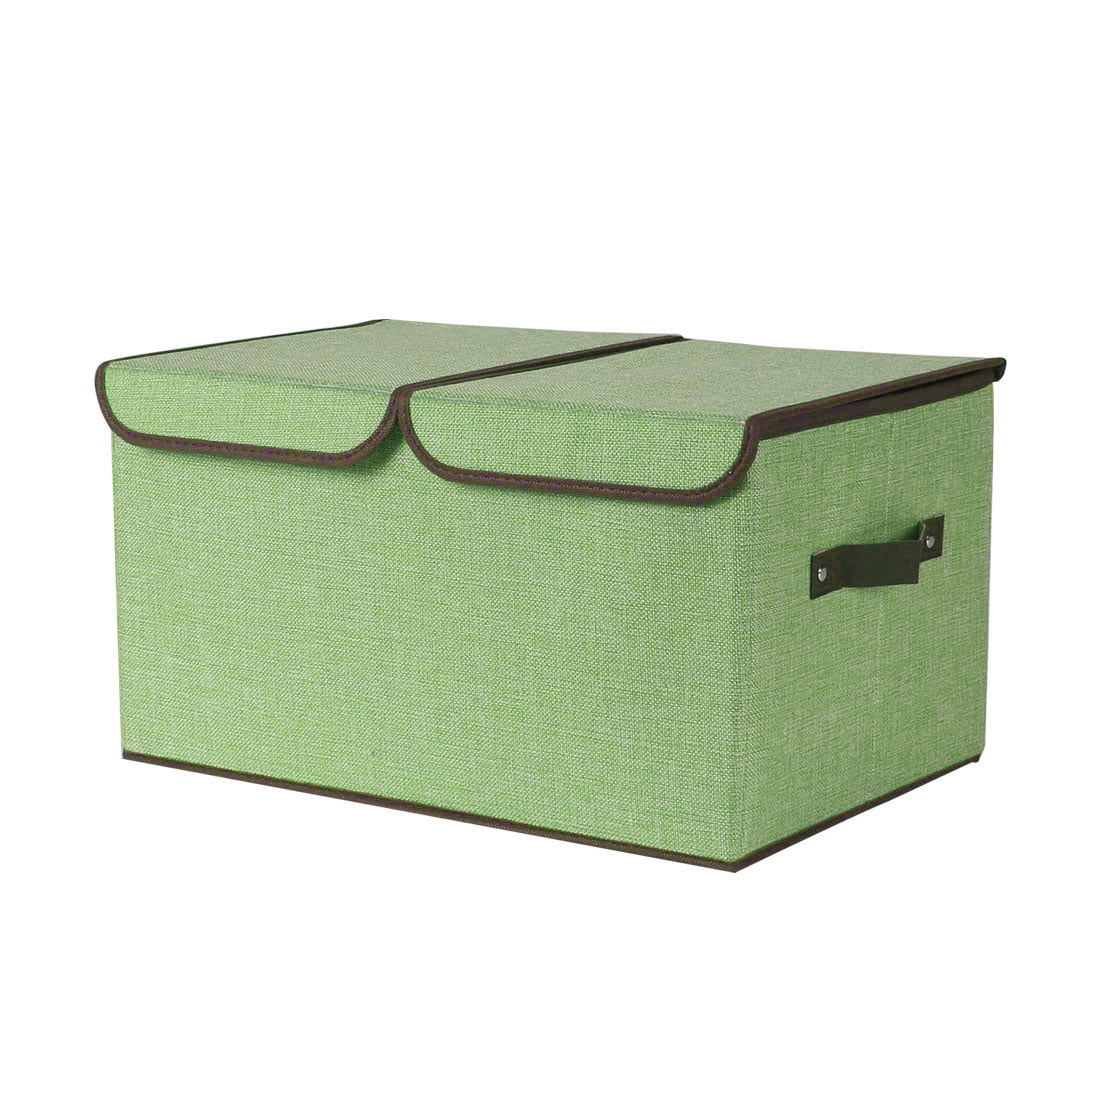 Durable Storage Bin Closet Toy Box Container Organizer Fabric Basket Bin Storage 